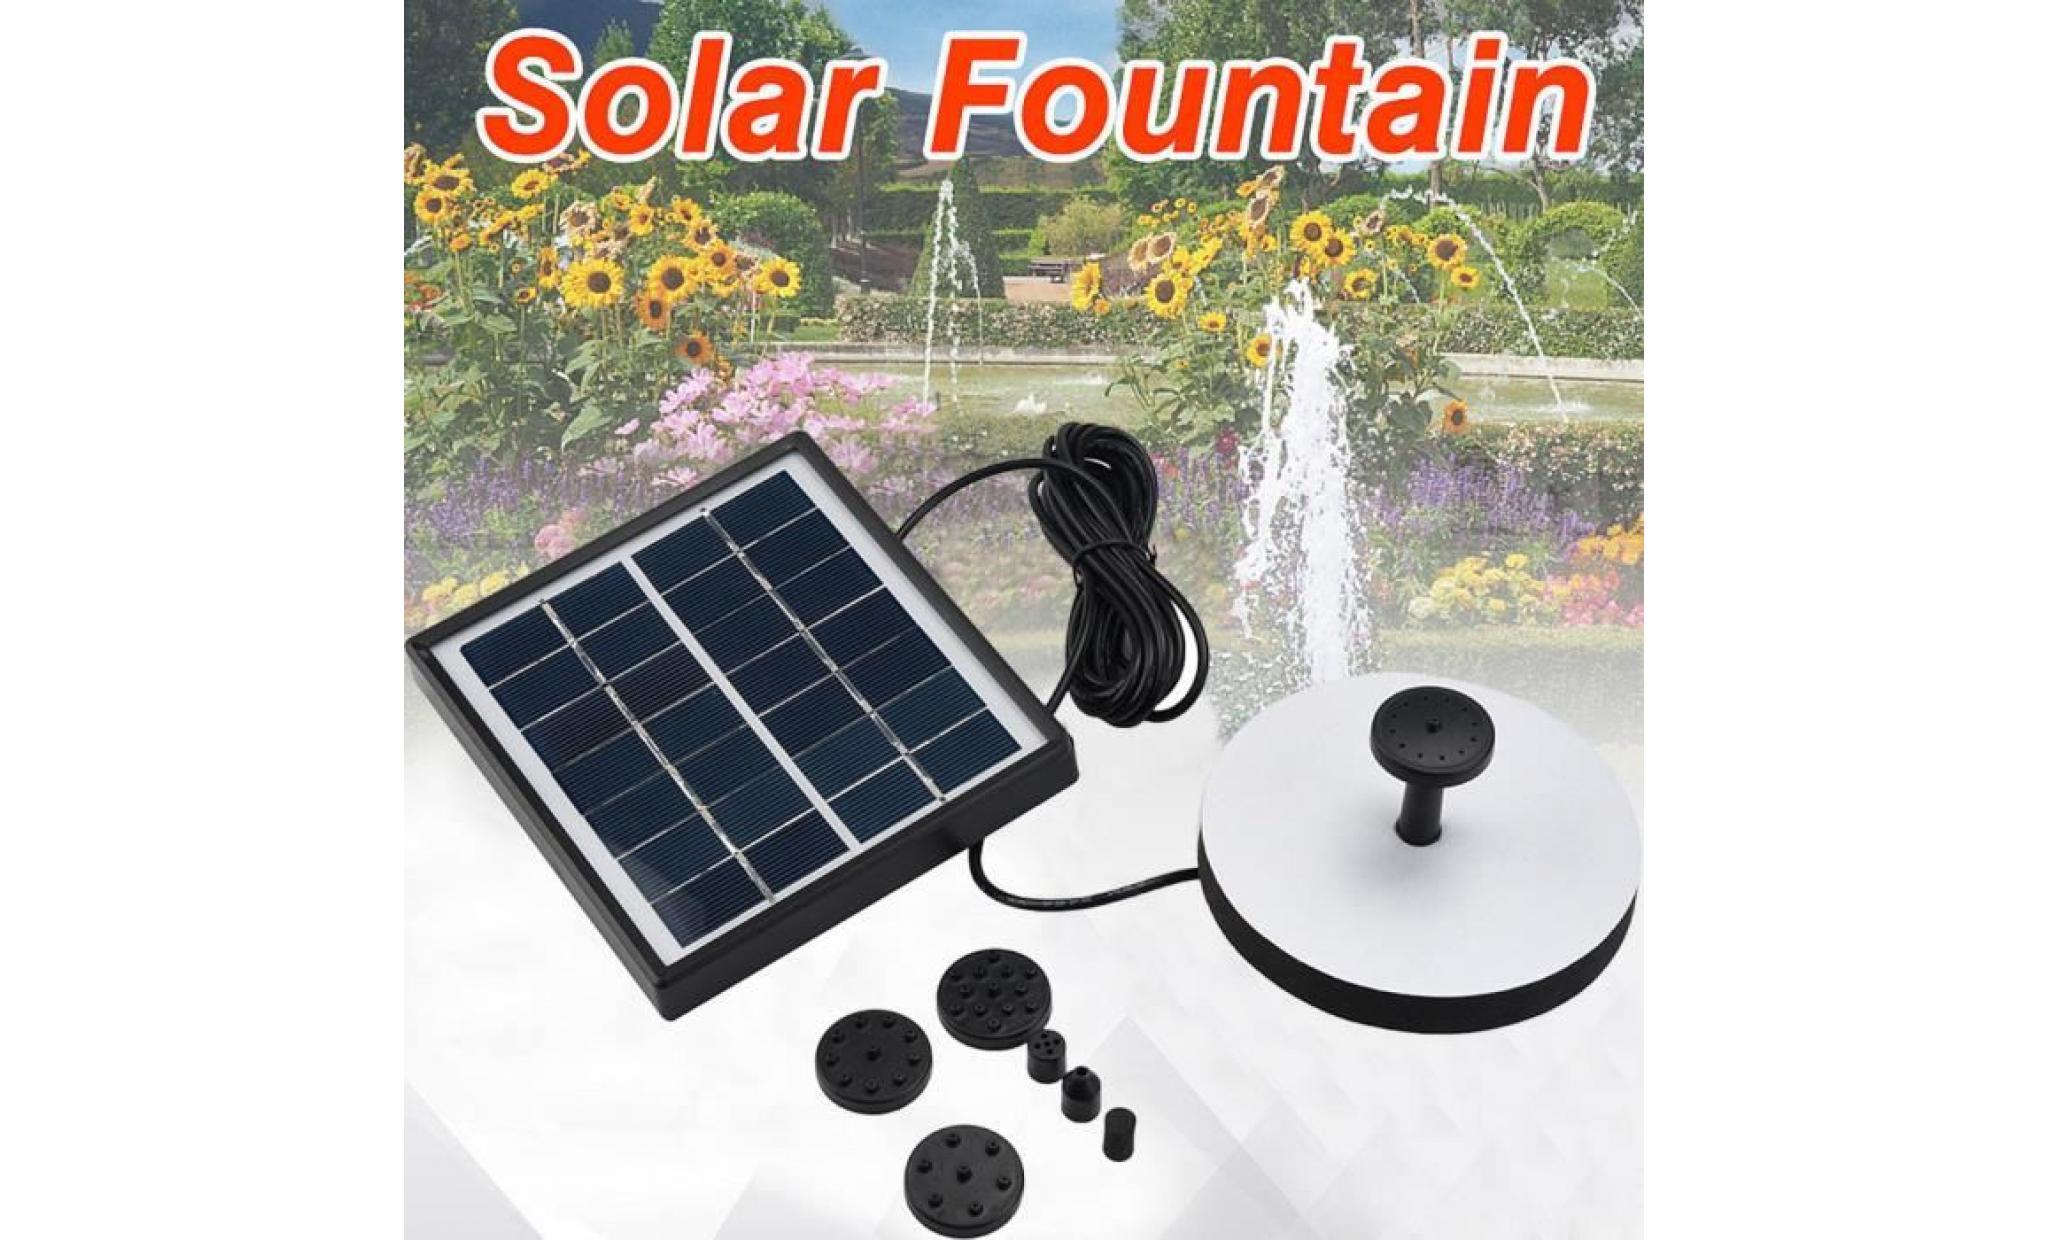 iportan® panneau solaire d'eau d'alimentation fontaine pompe kit piscine étang de jardin arrosage submersible noir_37